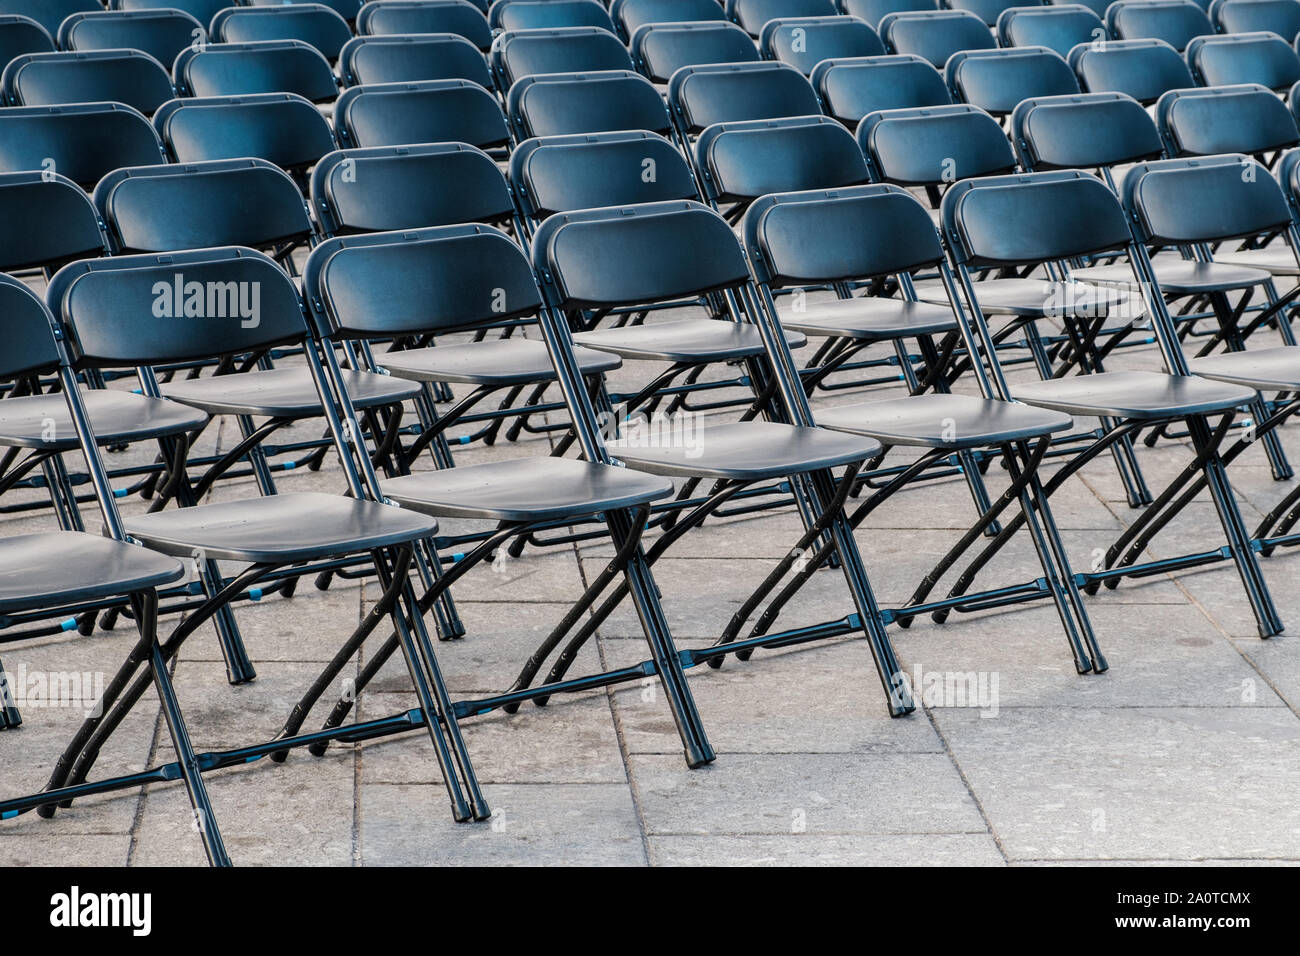 Reihen von Klappstühle, leere Sitze zum Ereignis - Stuhl Zeile Stockfoto